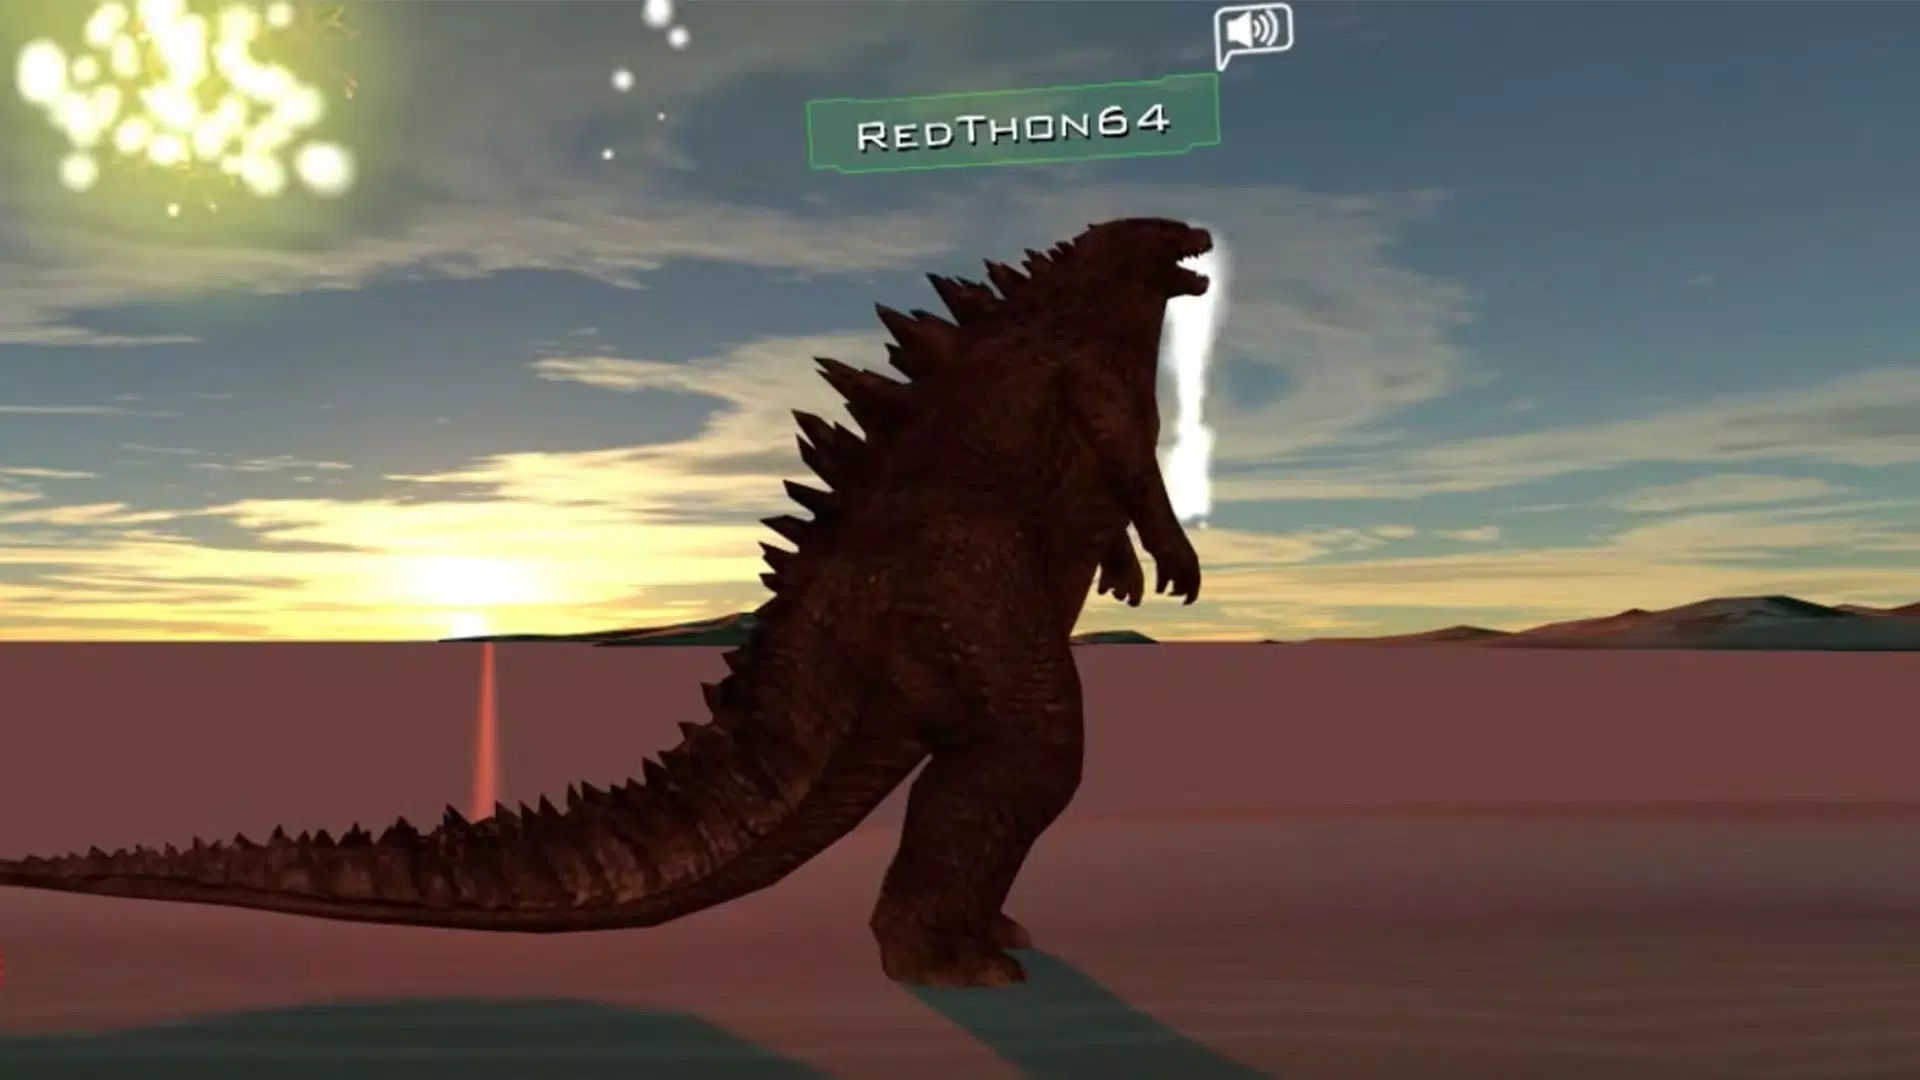 Được đặt trên hành tinh khủng long, Dinosaur VRChat Avatar là một trải nghiệm độc đáo mà bạn không thể bỏ qua. Với đủ loại khủng long và các hoạt động liên quan, bạn sẽ cảm nhận được cảm giác cuồng nhiệt khám phá mọi thứ.